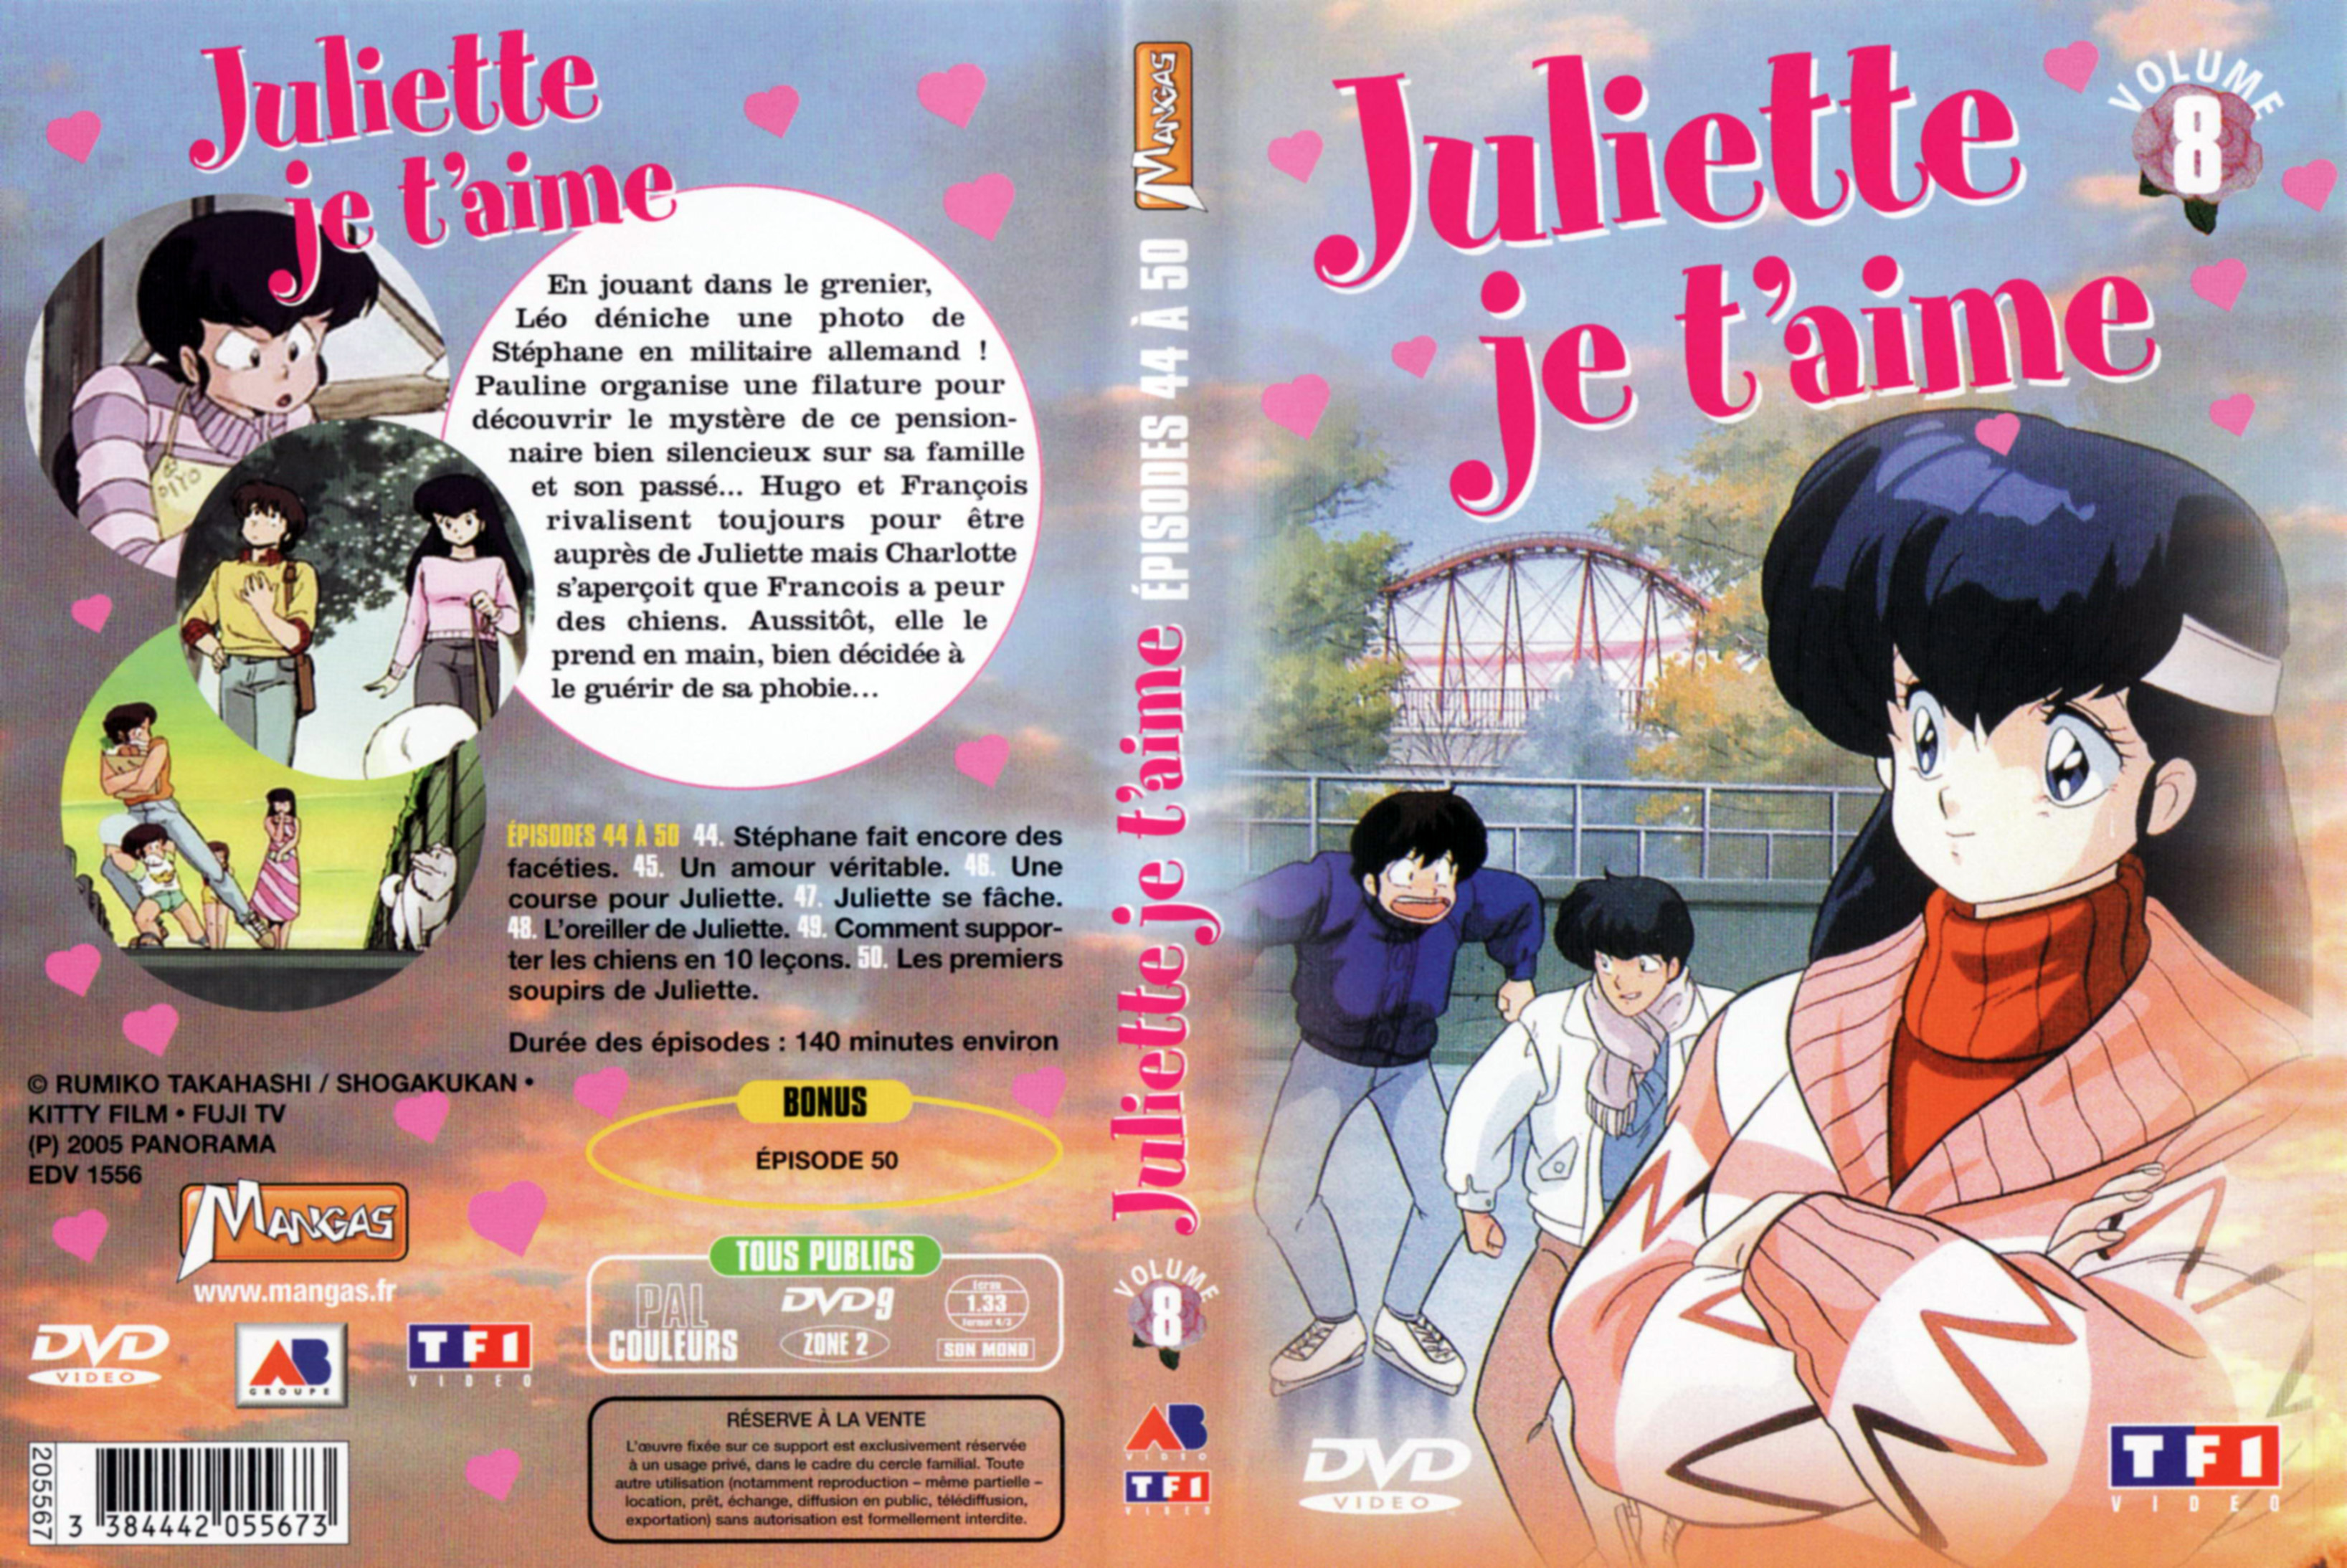 Jaquette DVD Juliette je t aime vol 08